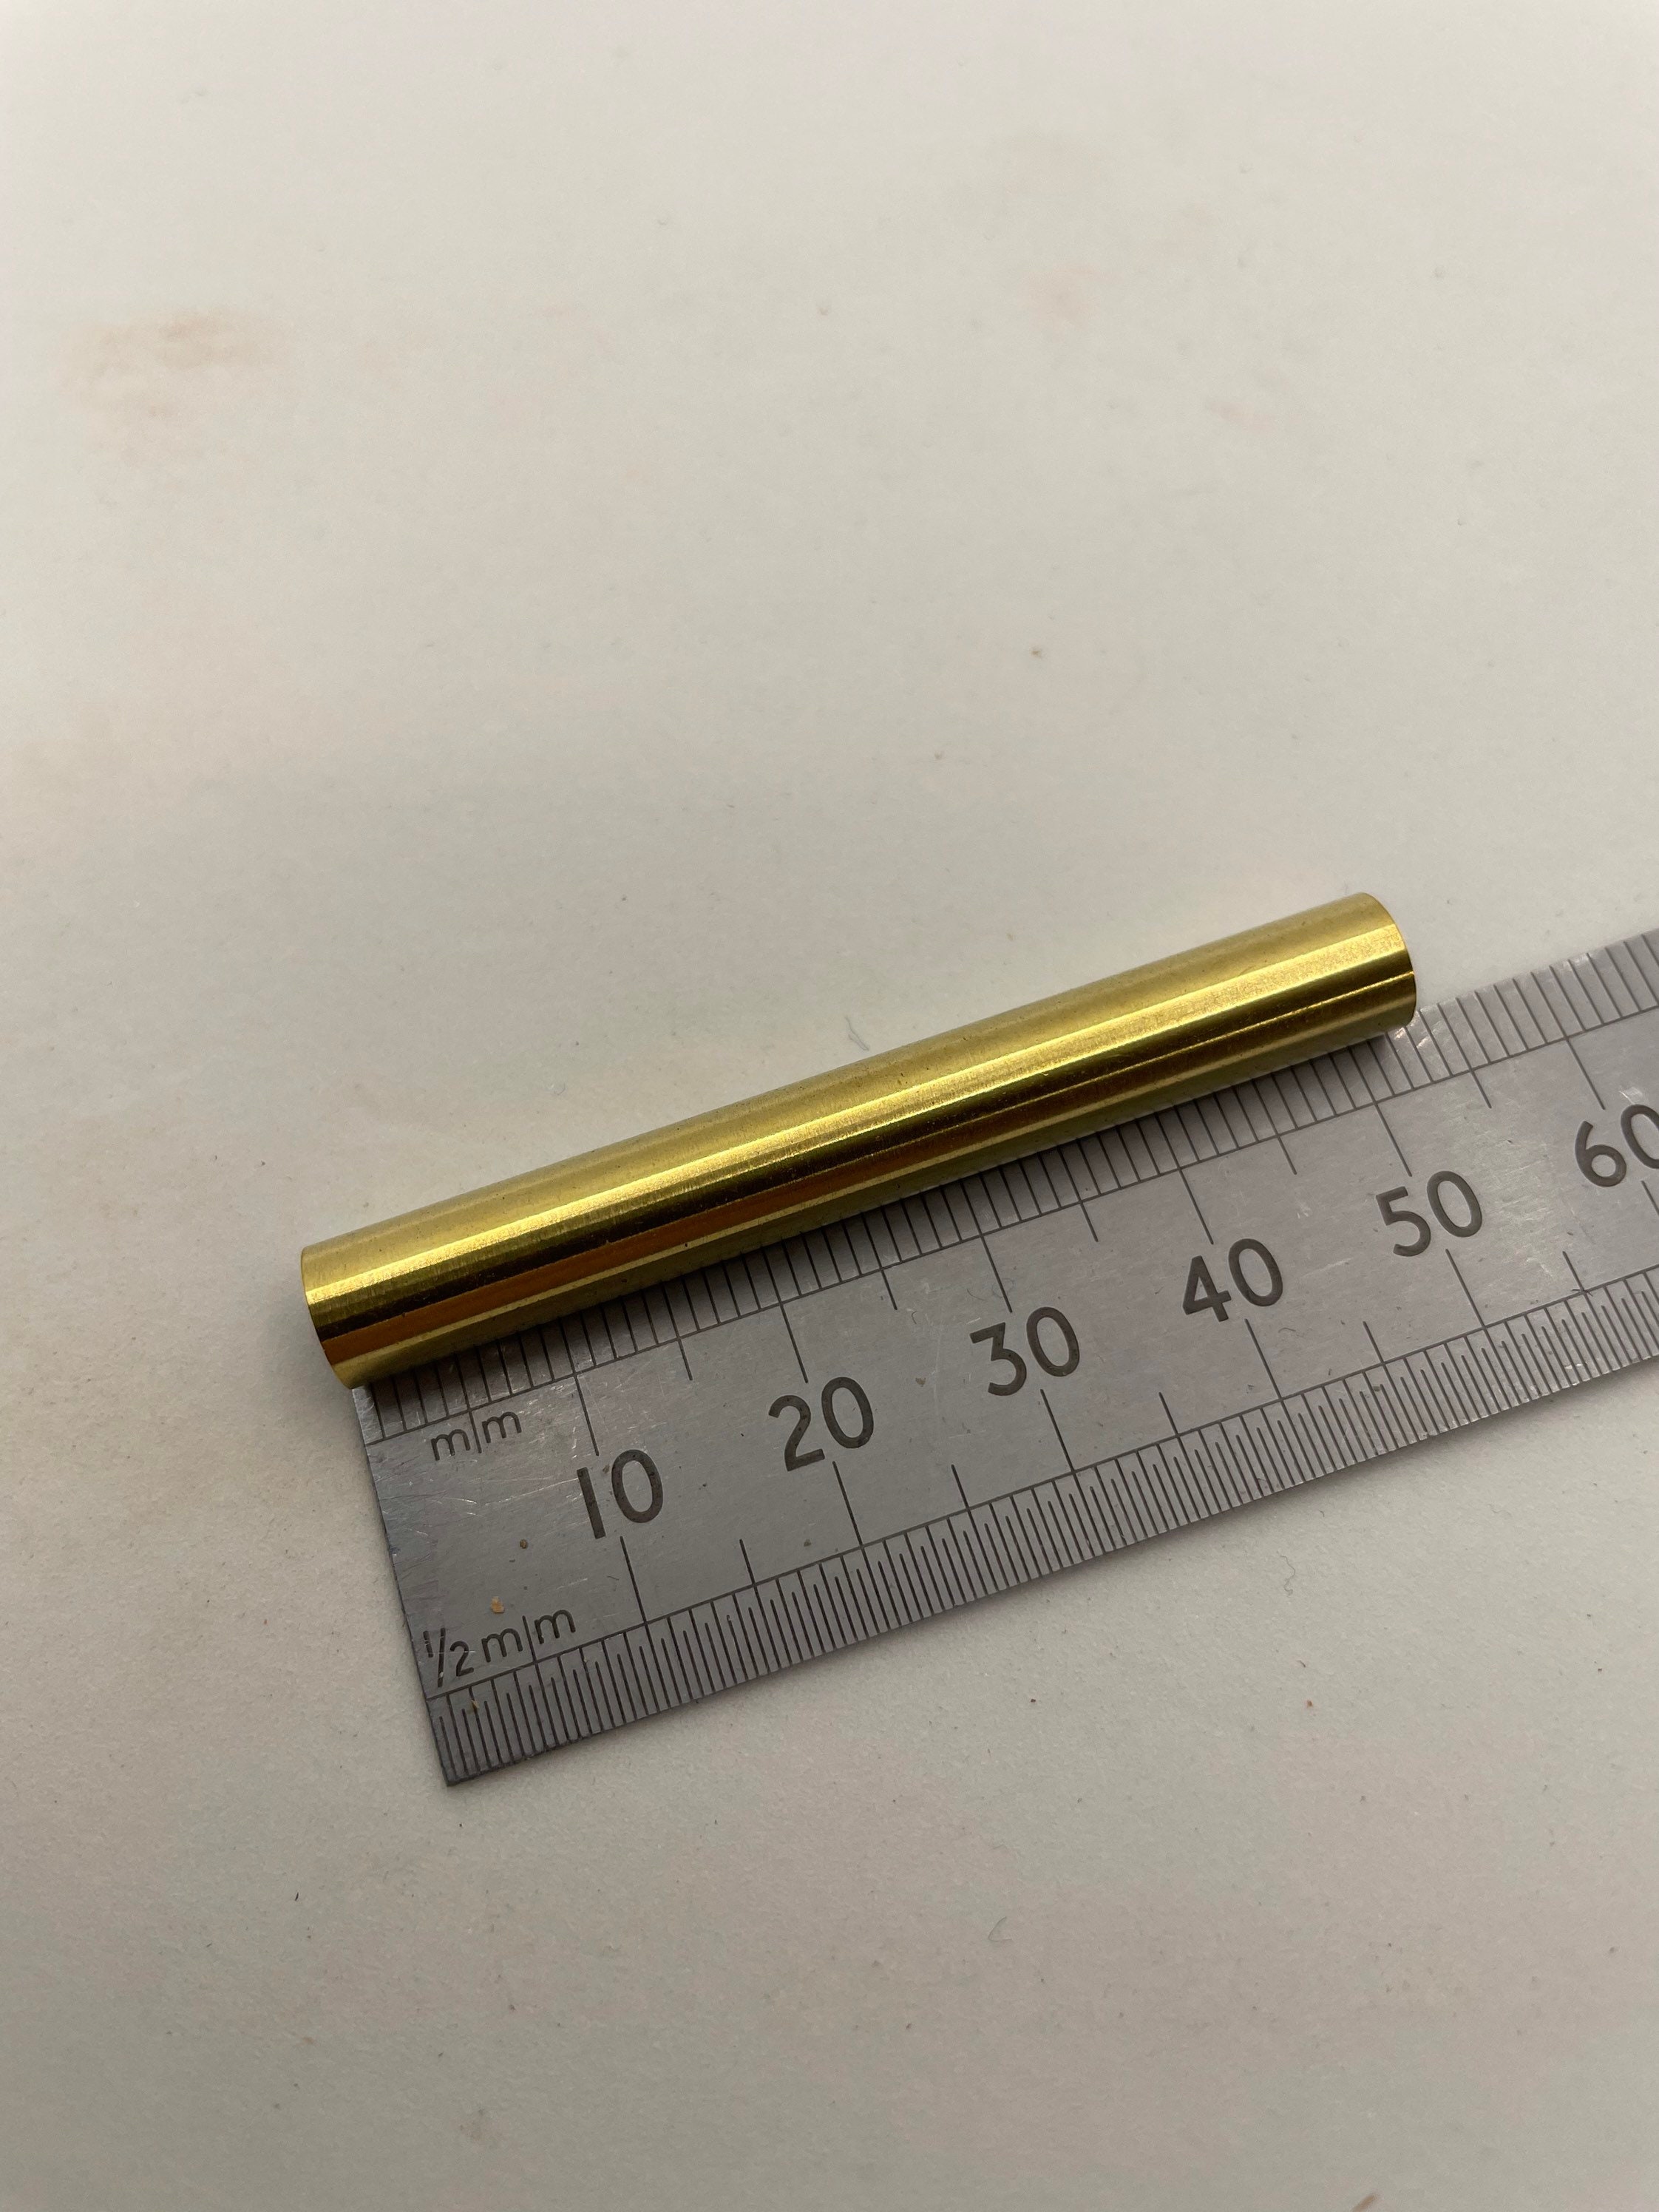 7mm Spare Tubes for Slimline Pen Kits - 10/pack at Penn State